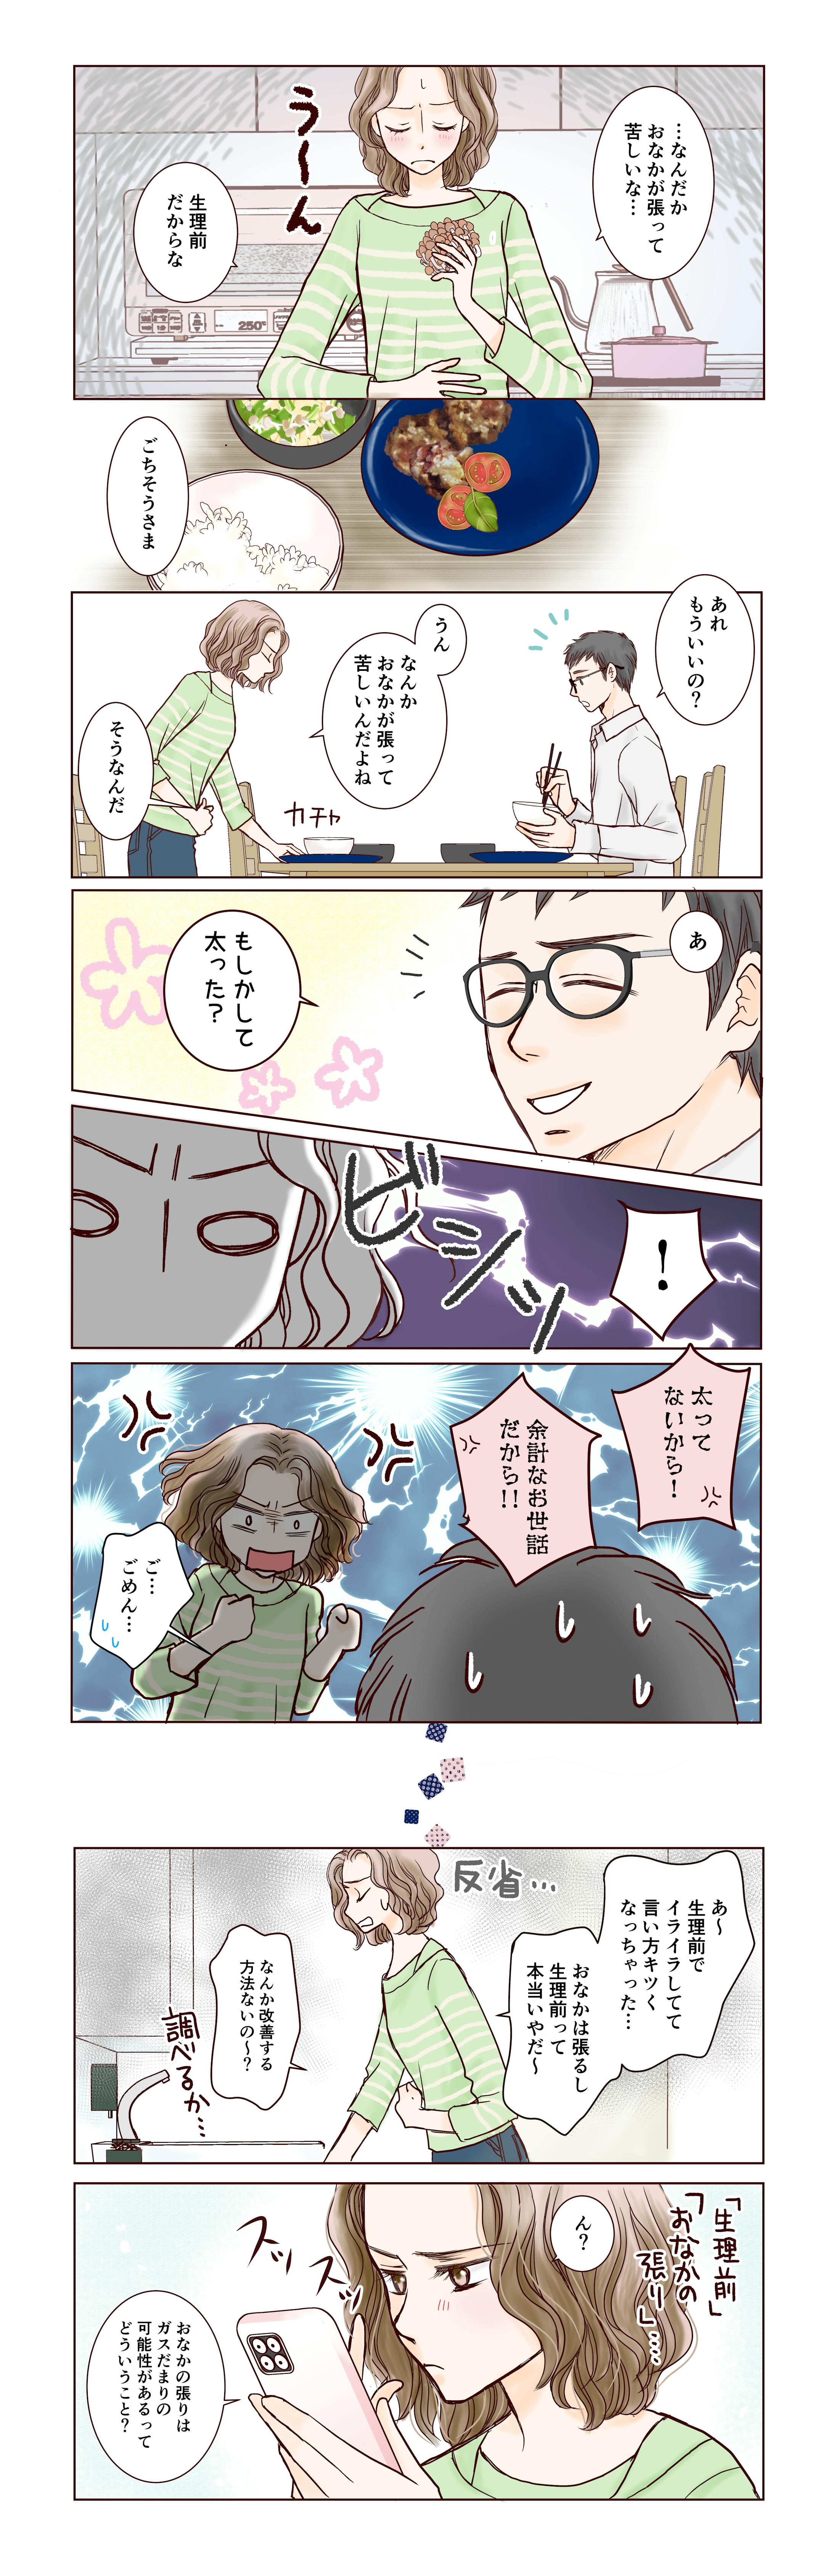 ルナルナ×小林製薬ガスピタン広告漫画・イラスト-1